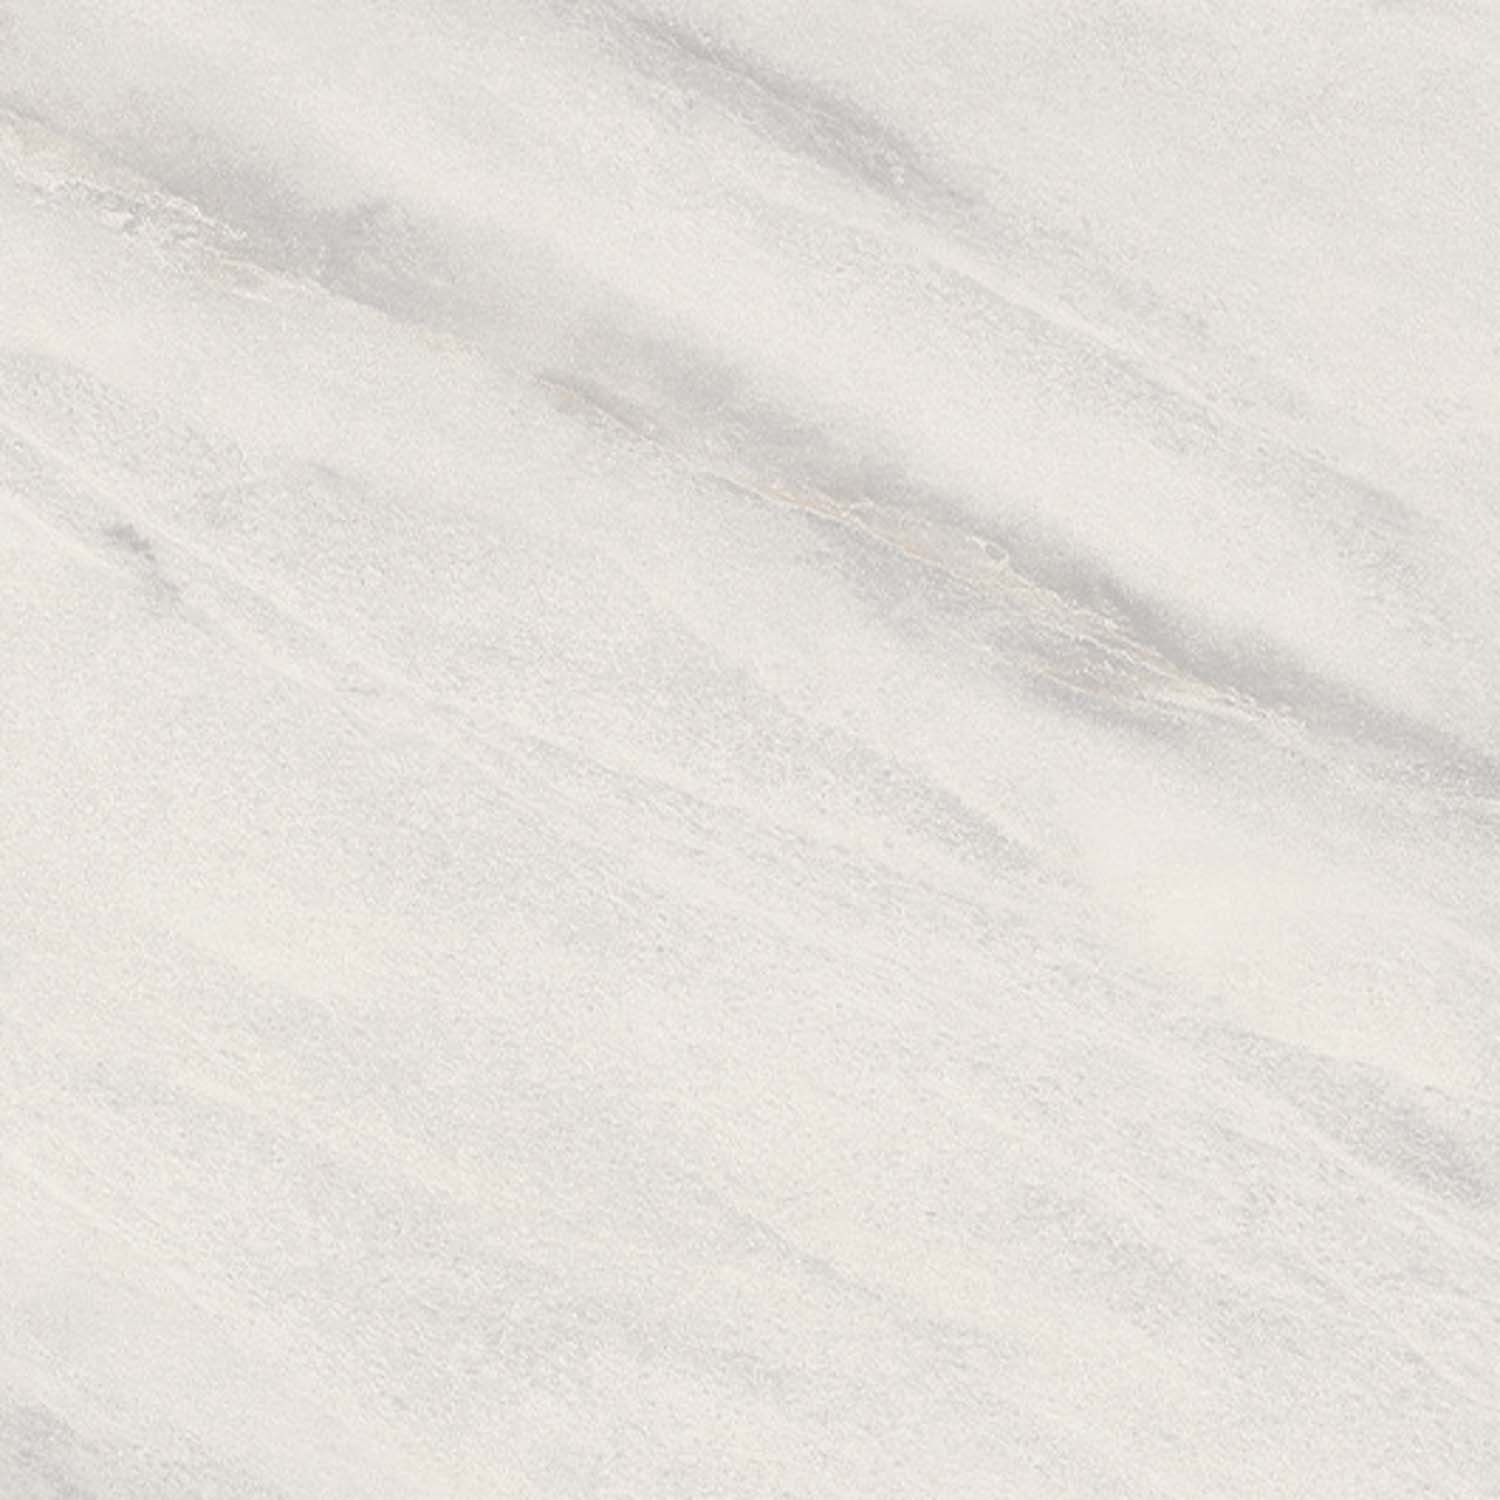 Mobilă de bucătărie modernă Nobilia Color Concept - Marmură Carrara 